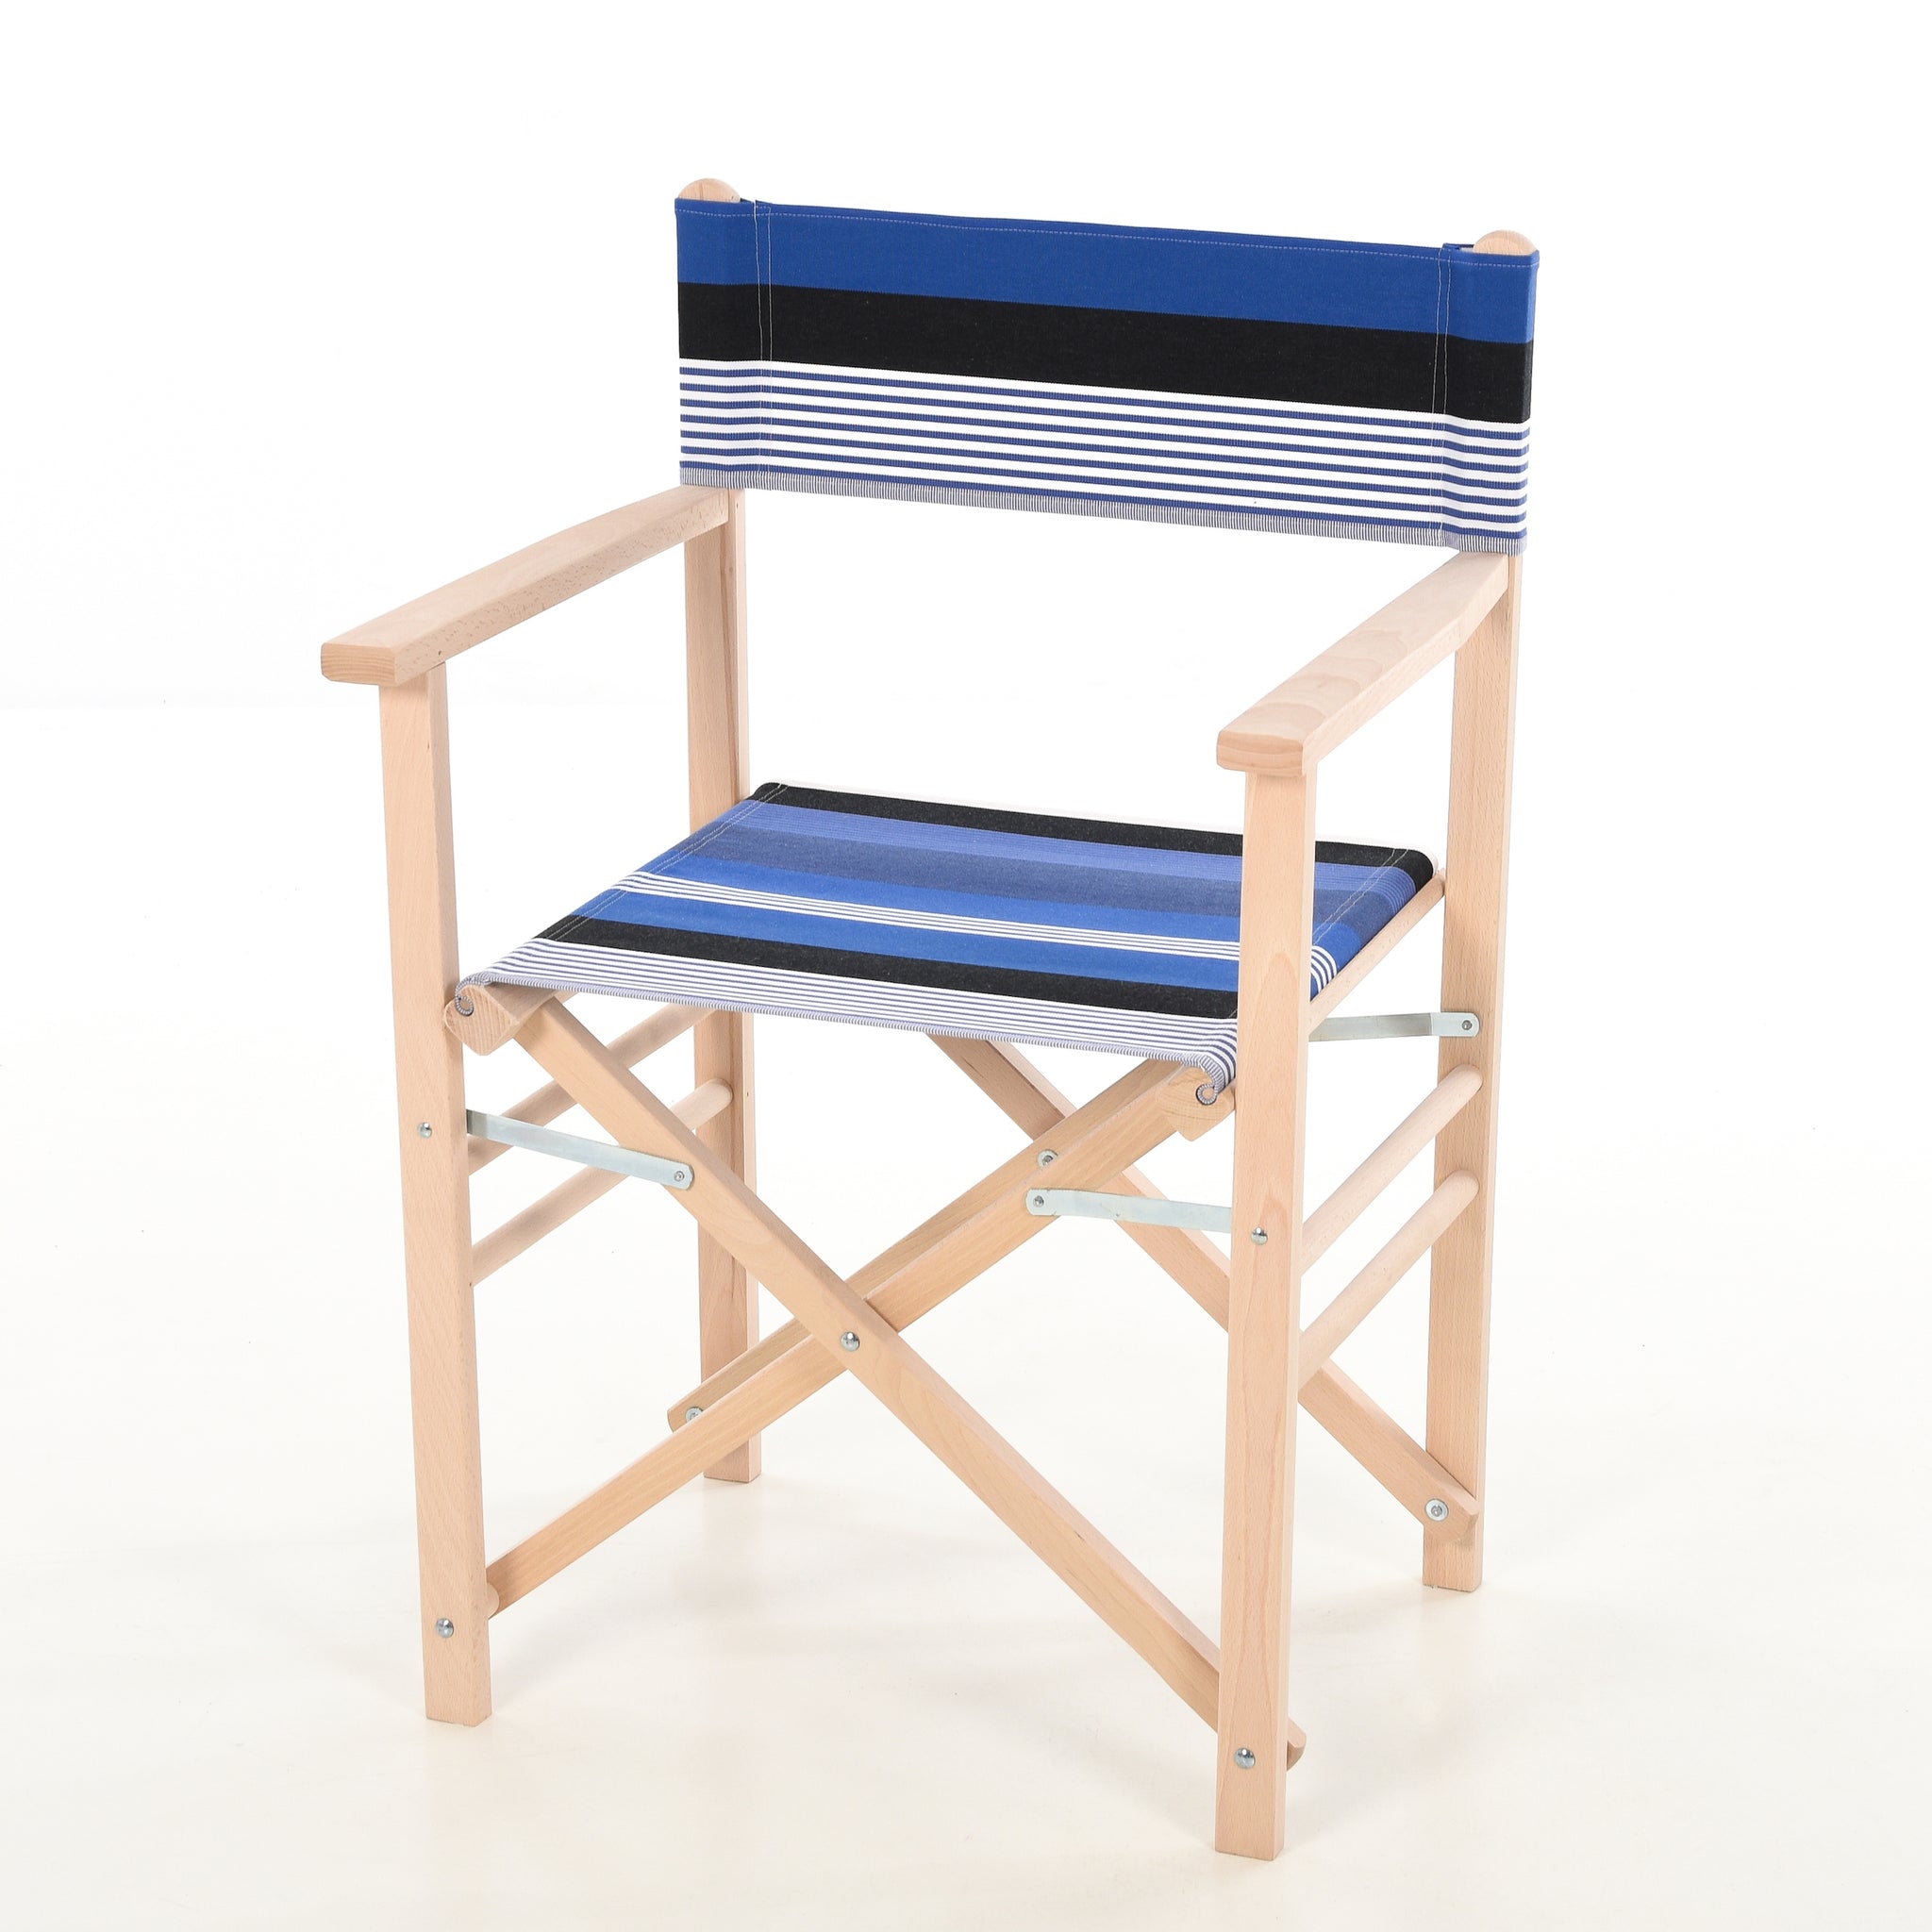 textuur Oprechtheid Succesvol houten regiestoel met zwart wit blauwe bekleding - kleurmeester.nl –  Kleurmeester.nl